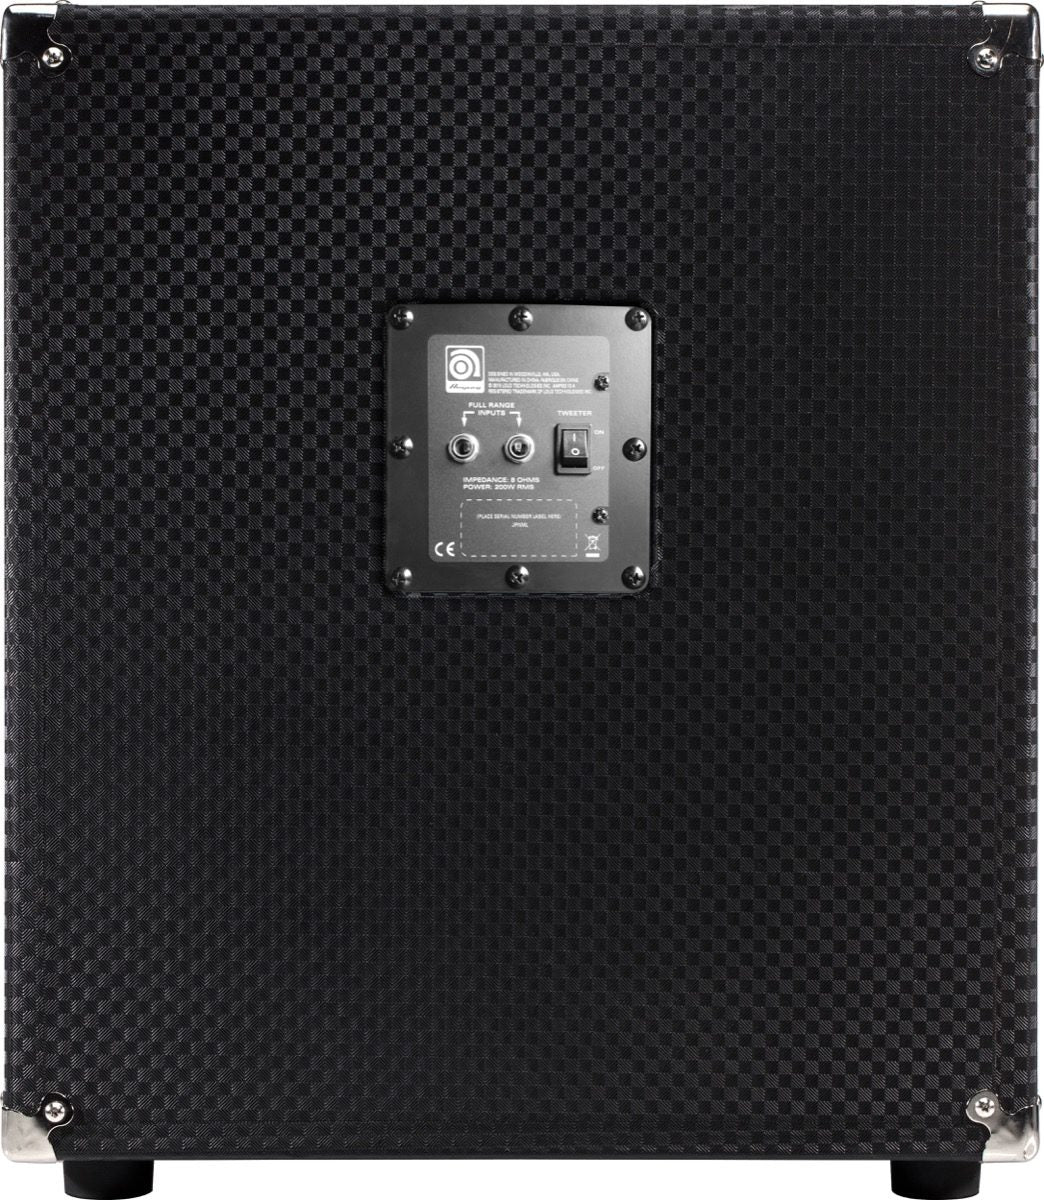 Ampeg PF112HLF Portaflex 1 x 12 200W Bass Speaker Cabinet Amplifier - Upzy.com